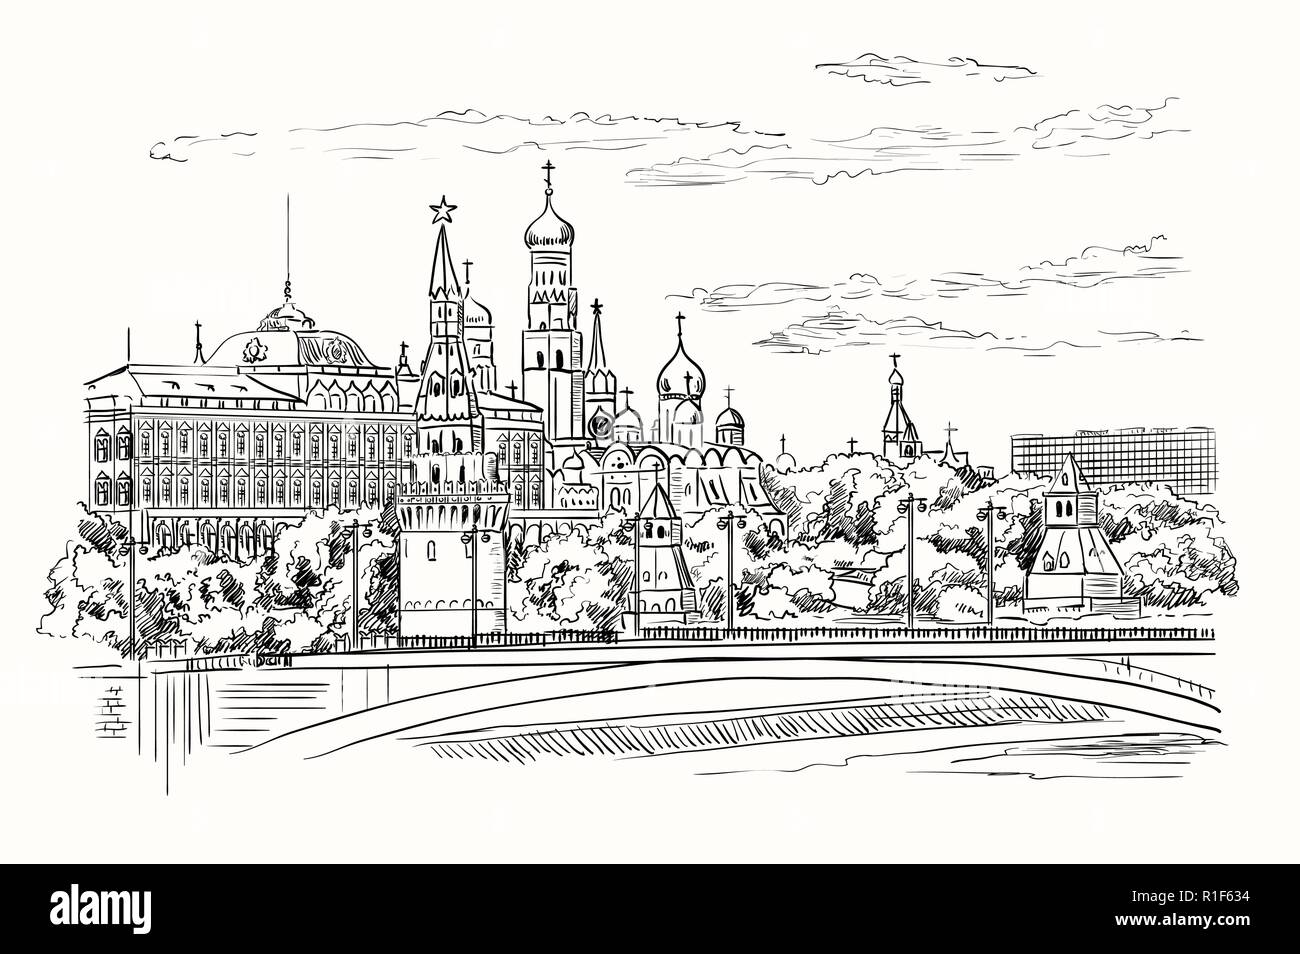 Stadtbild der Damm des Kreml Türme und Brücke über Fluss Moskau (Roter Platz, Moskau, Russland) isolierten Vektor hand Zeichnung Illustration in Bla Stock Vektor